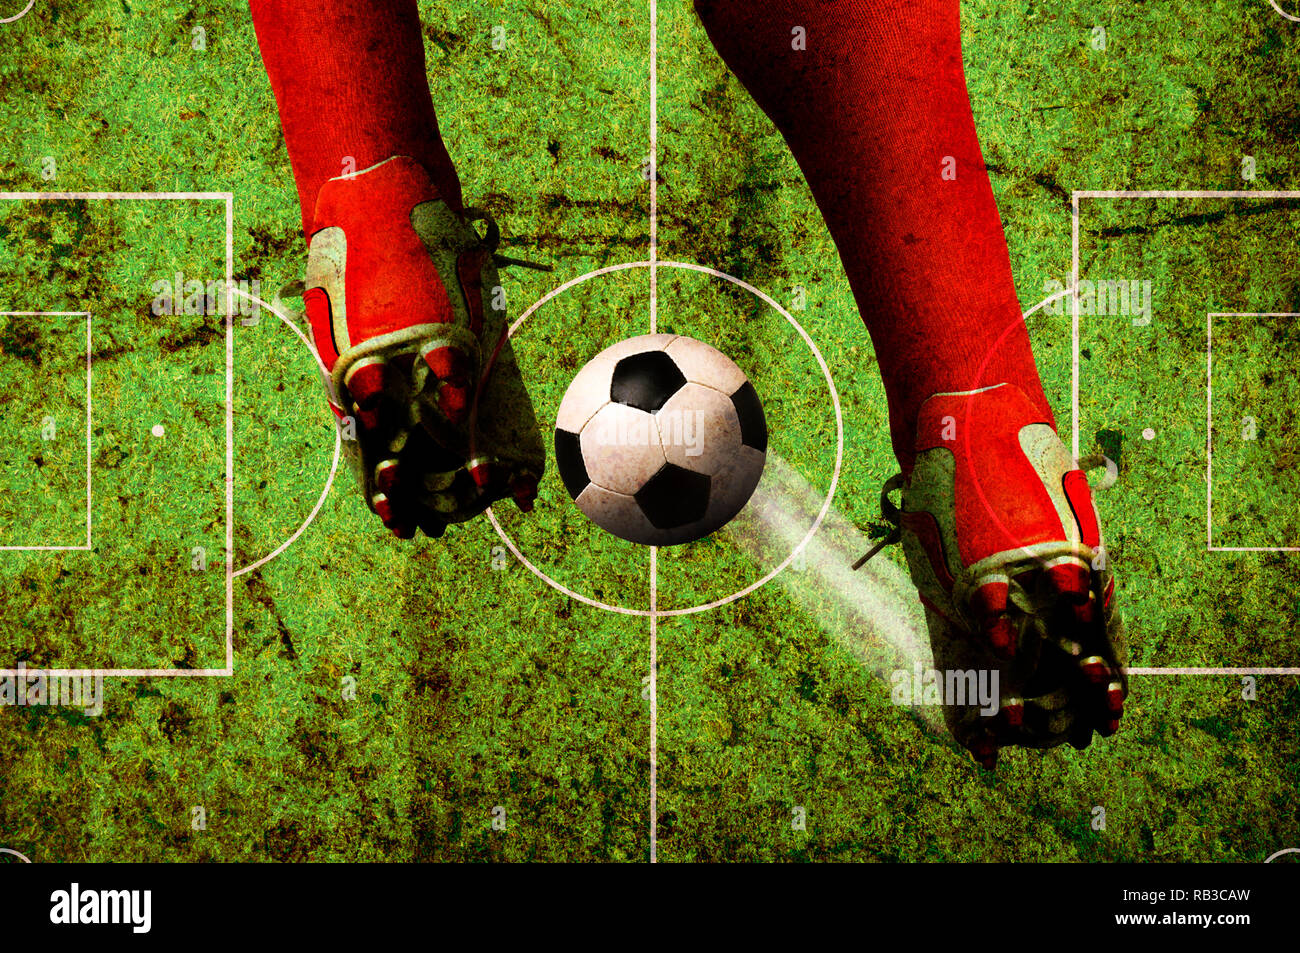 Fußballspieler Beine und ball, Fußball Konzept in grunge Stil Stockfoto